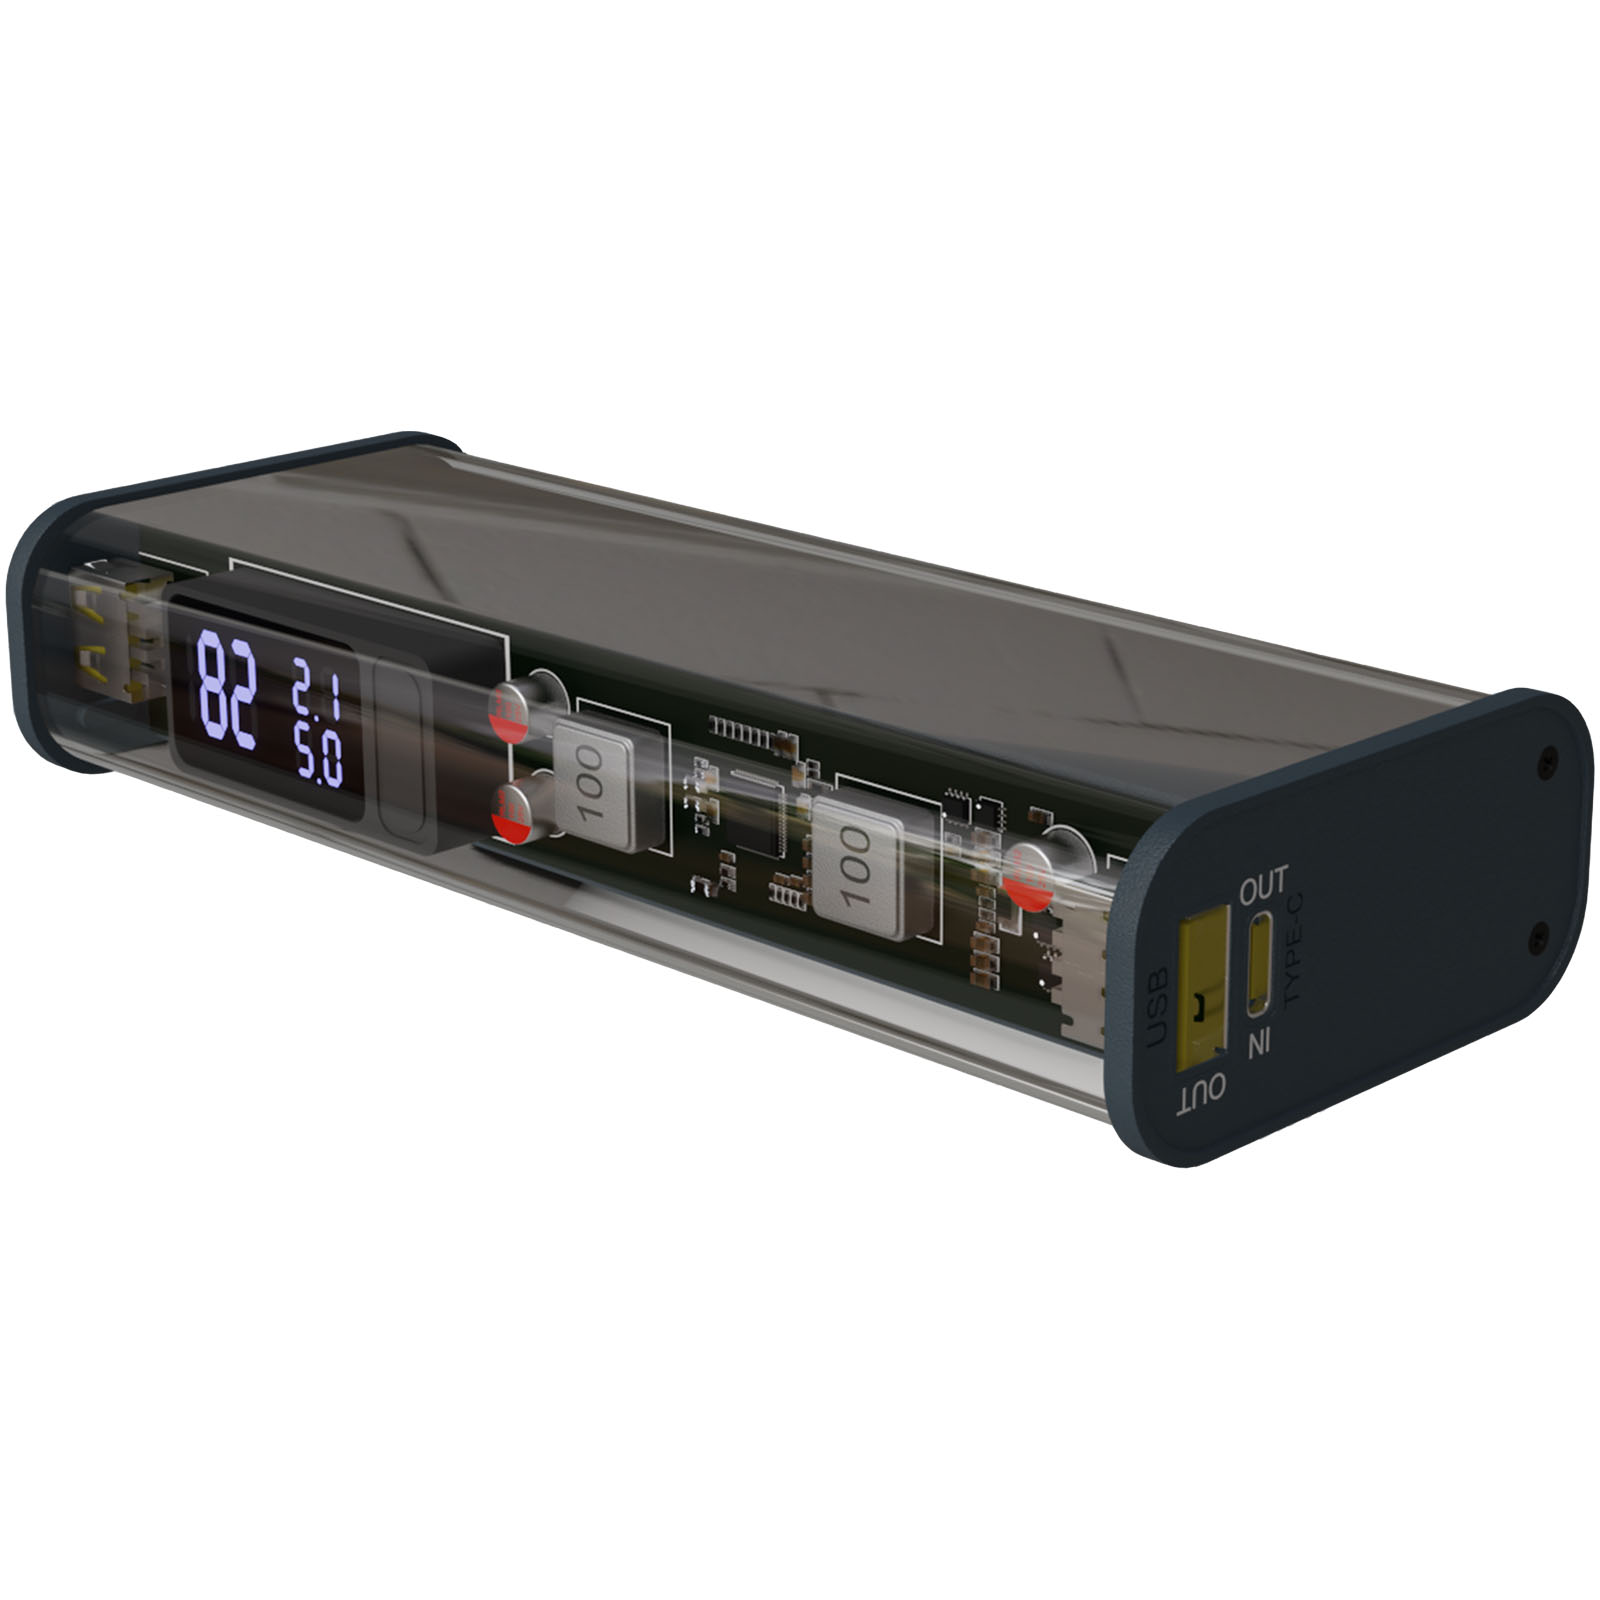 Transparente tragbare 20.000 mAh Powerbank mit 3-in-1 5A Ladekabel und USB-C Anschluss - Bernburg 